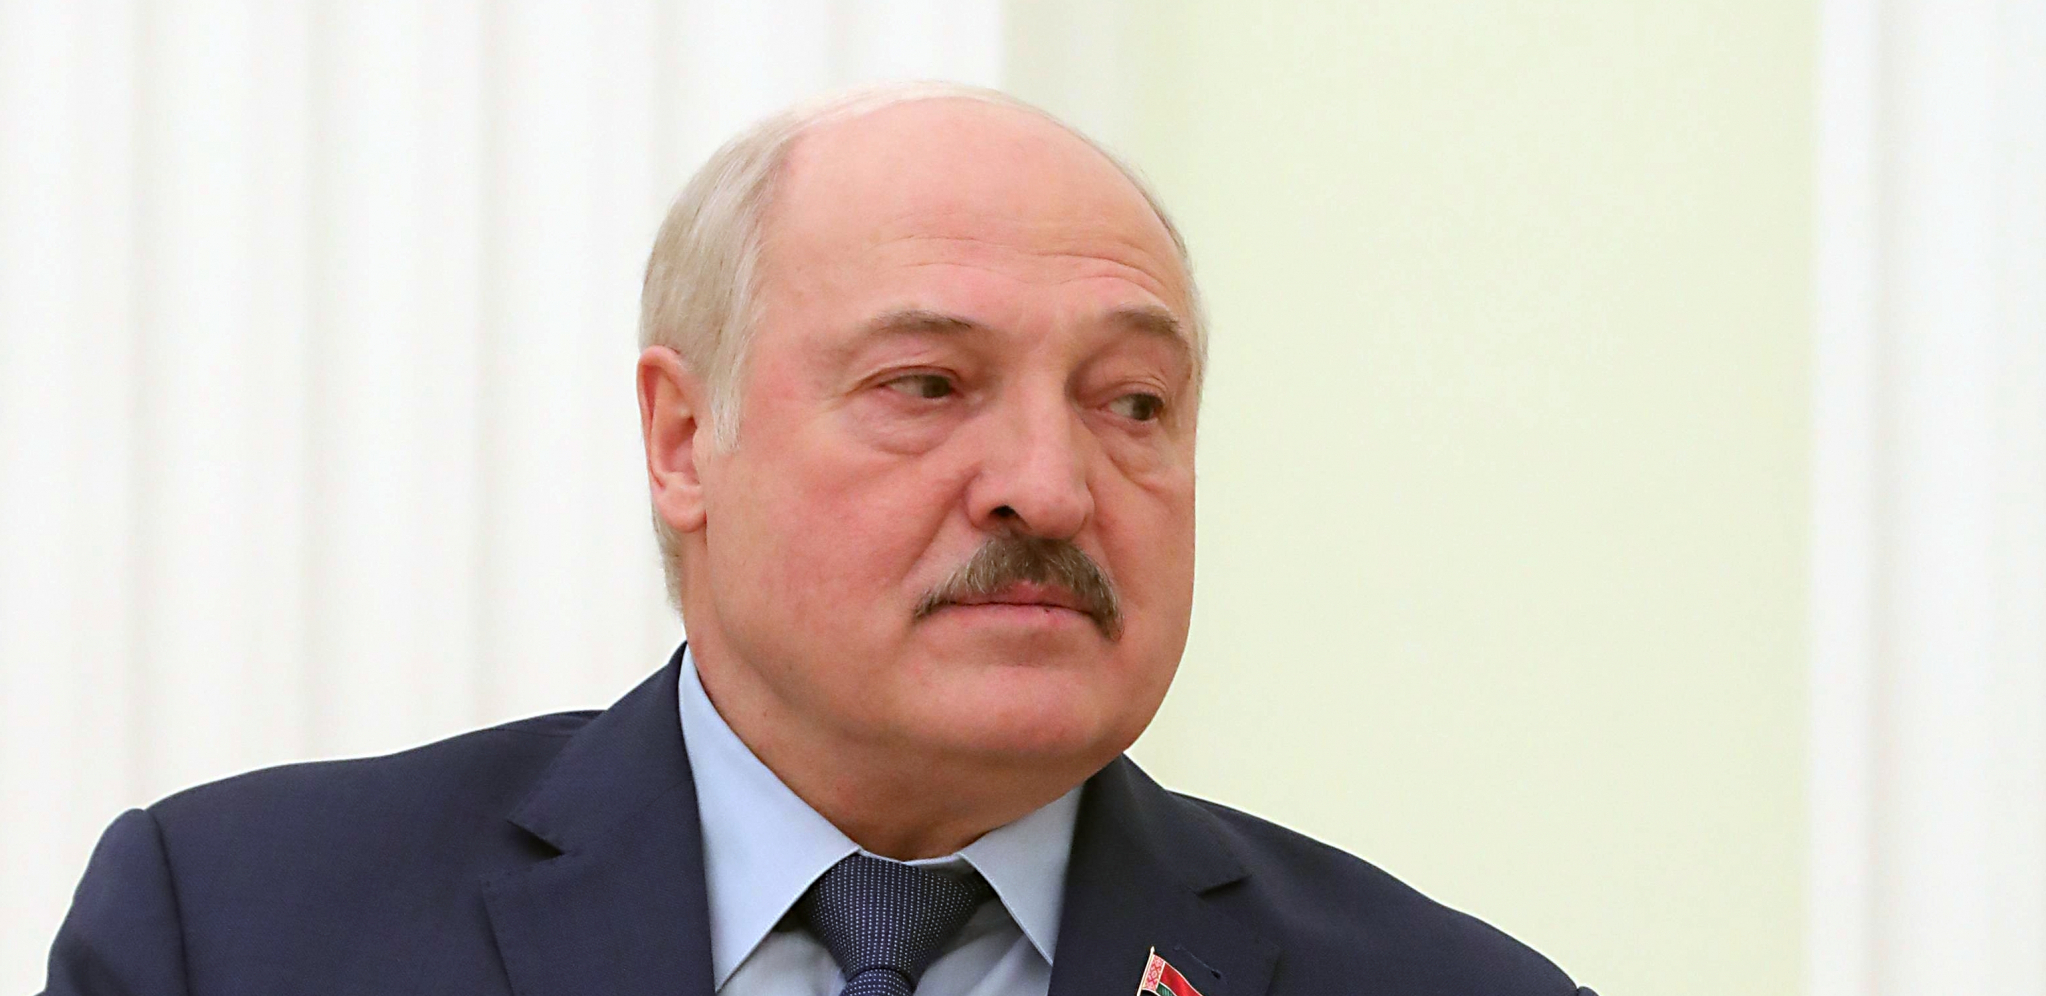 "FORMIRAJTE NEZAVISNU PALESTINU!" Lukašenko ima predlog za okončanje rata u Izraelu